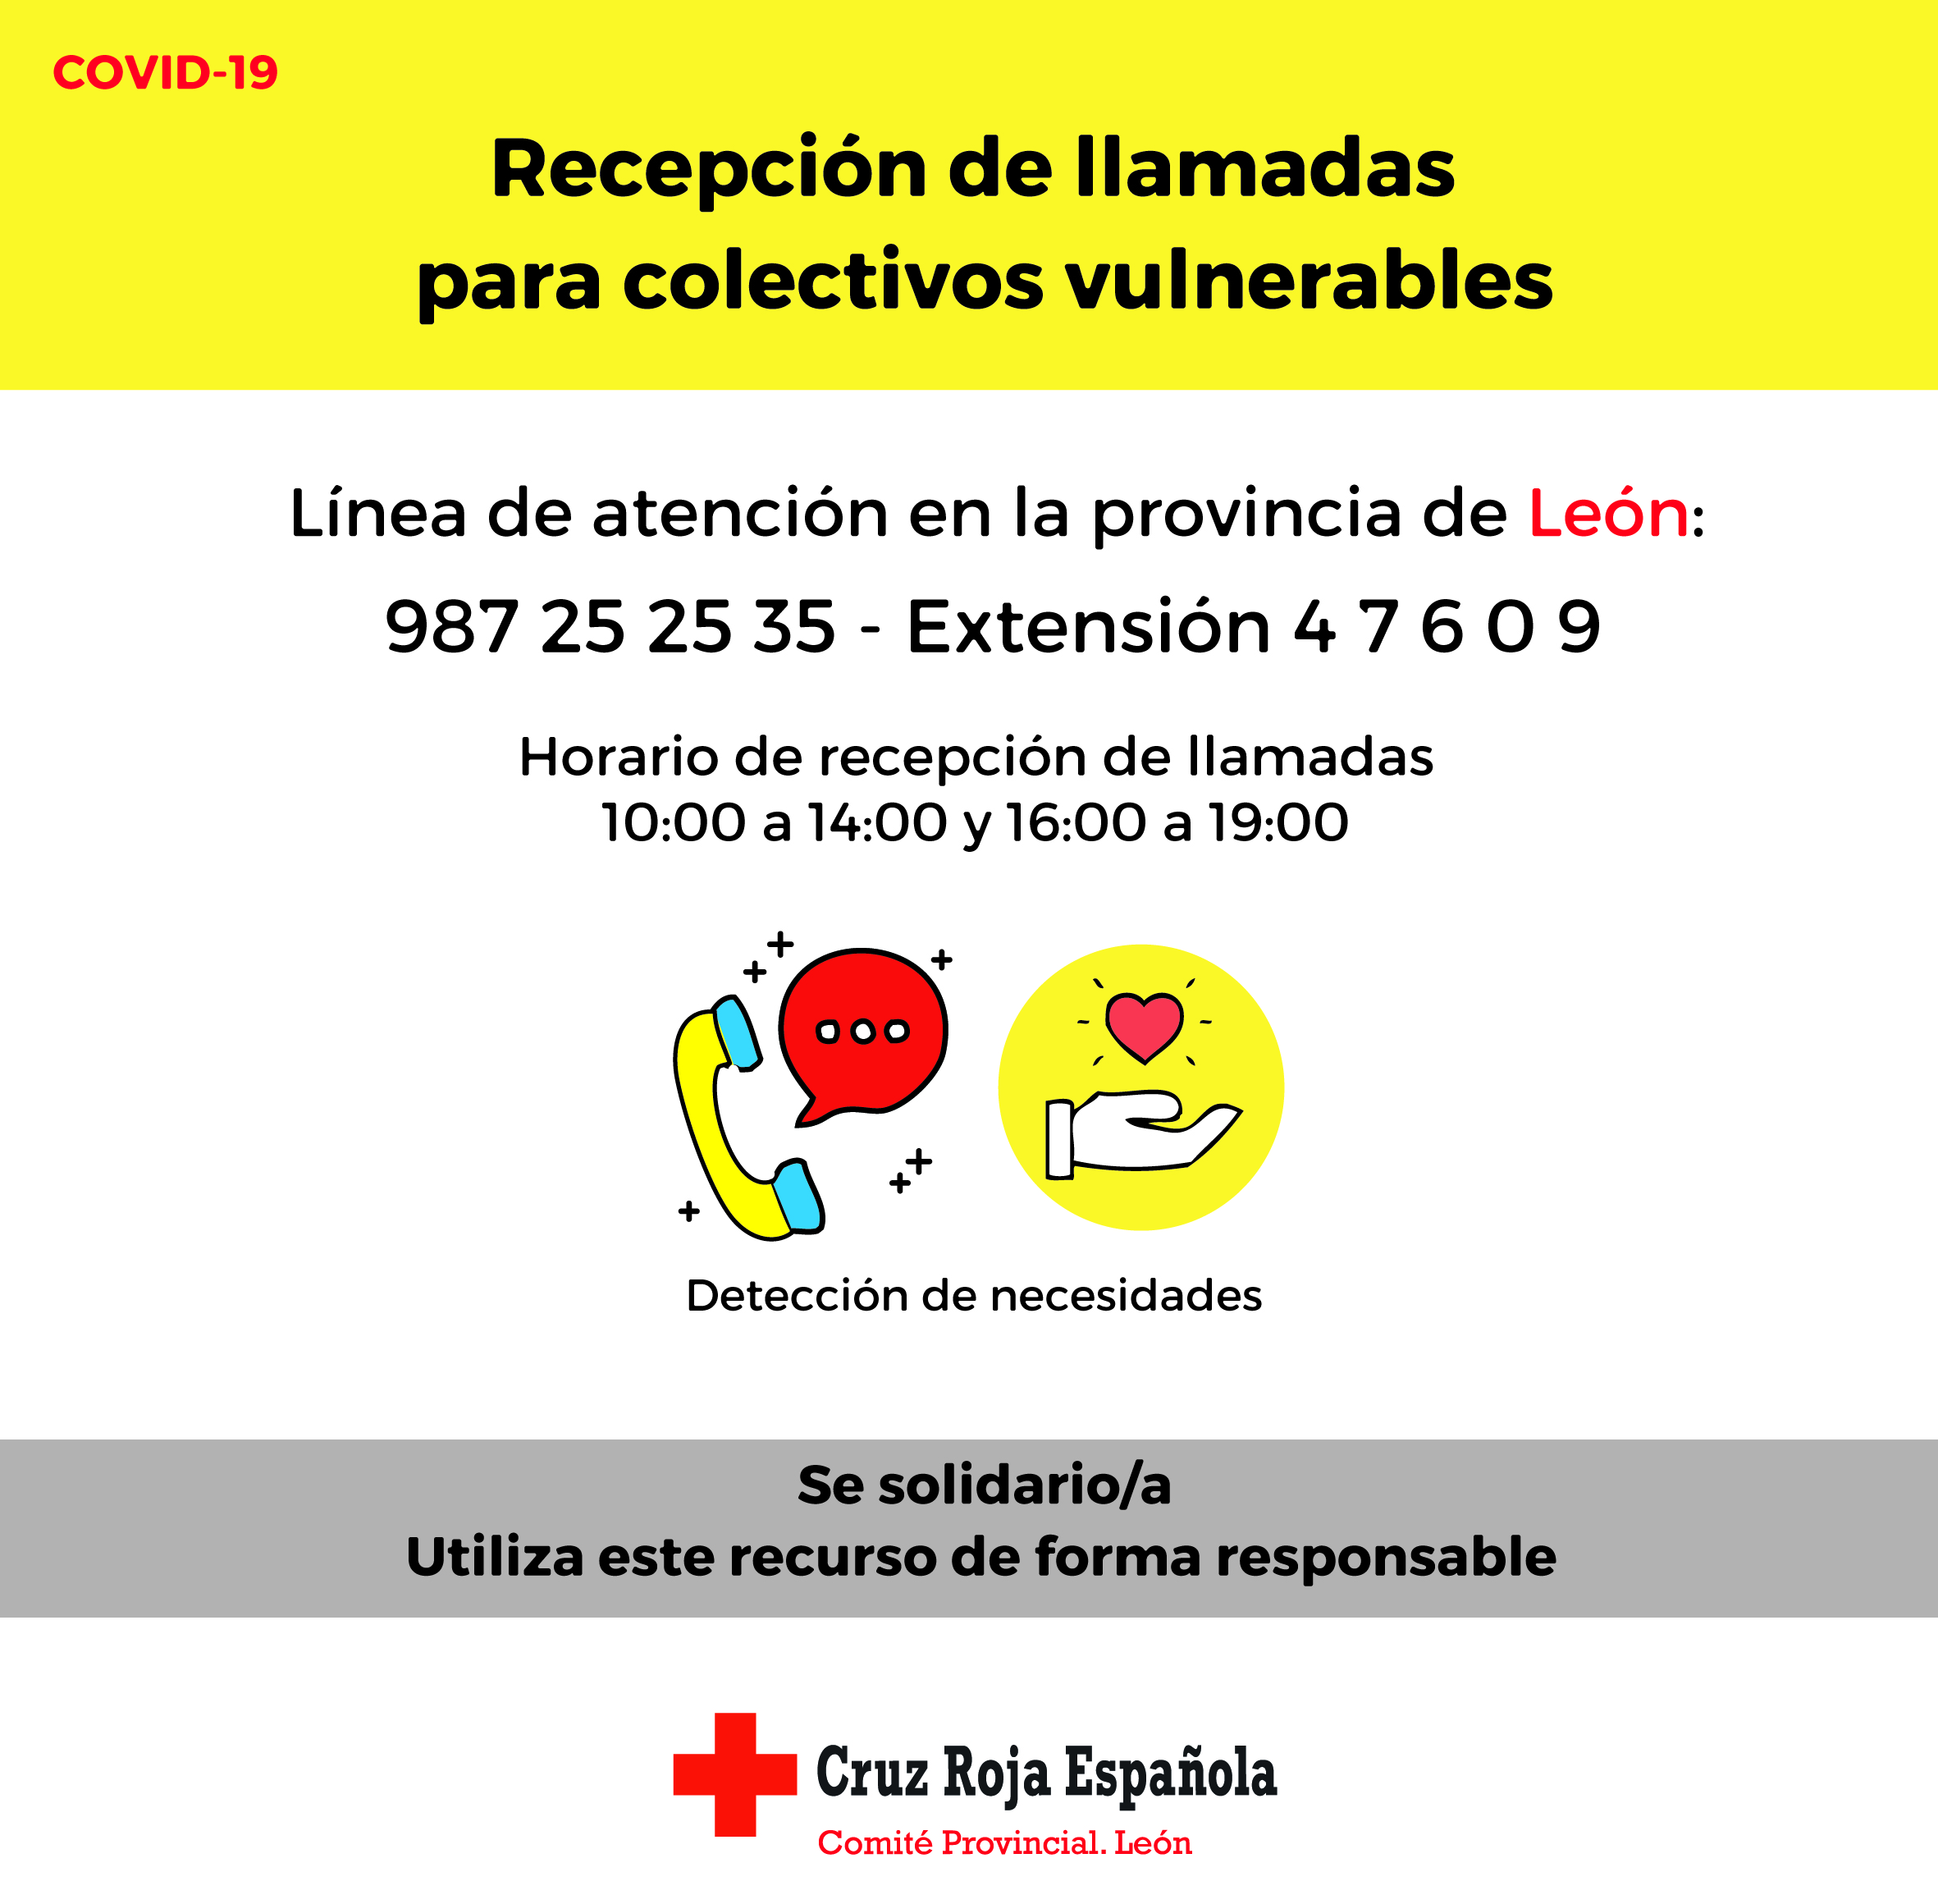 6568 personas atendidas en León por la Cruz Roja 4